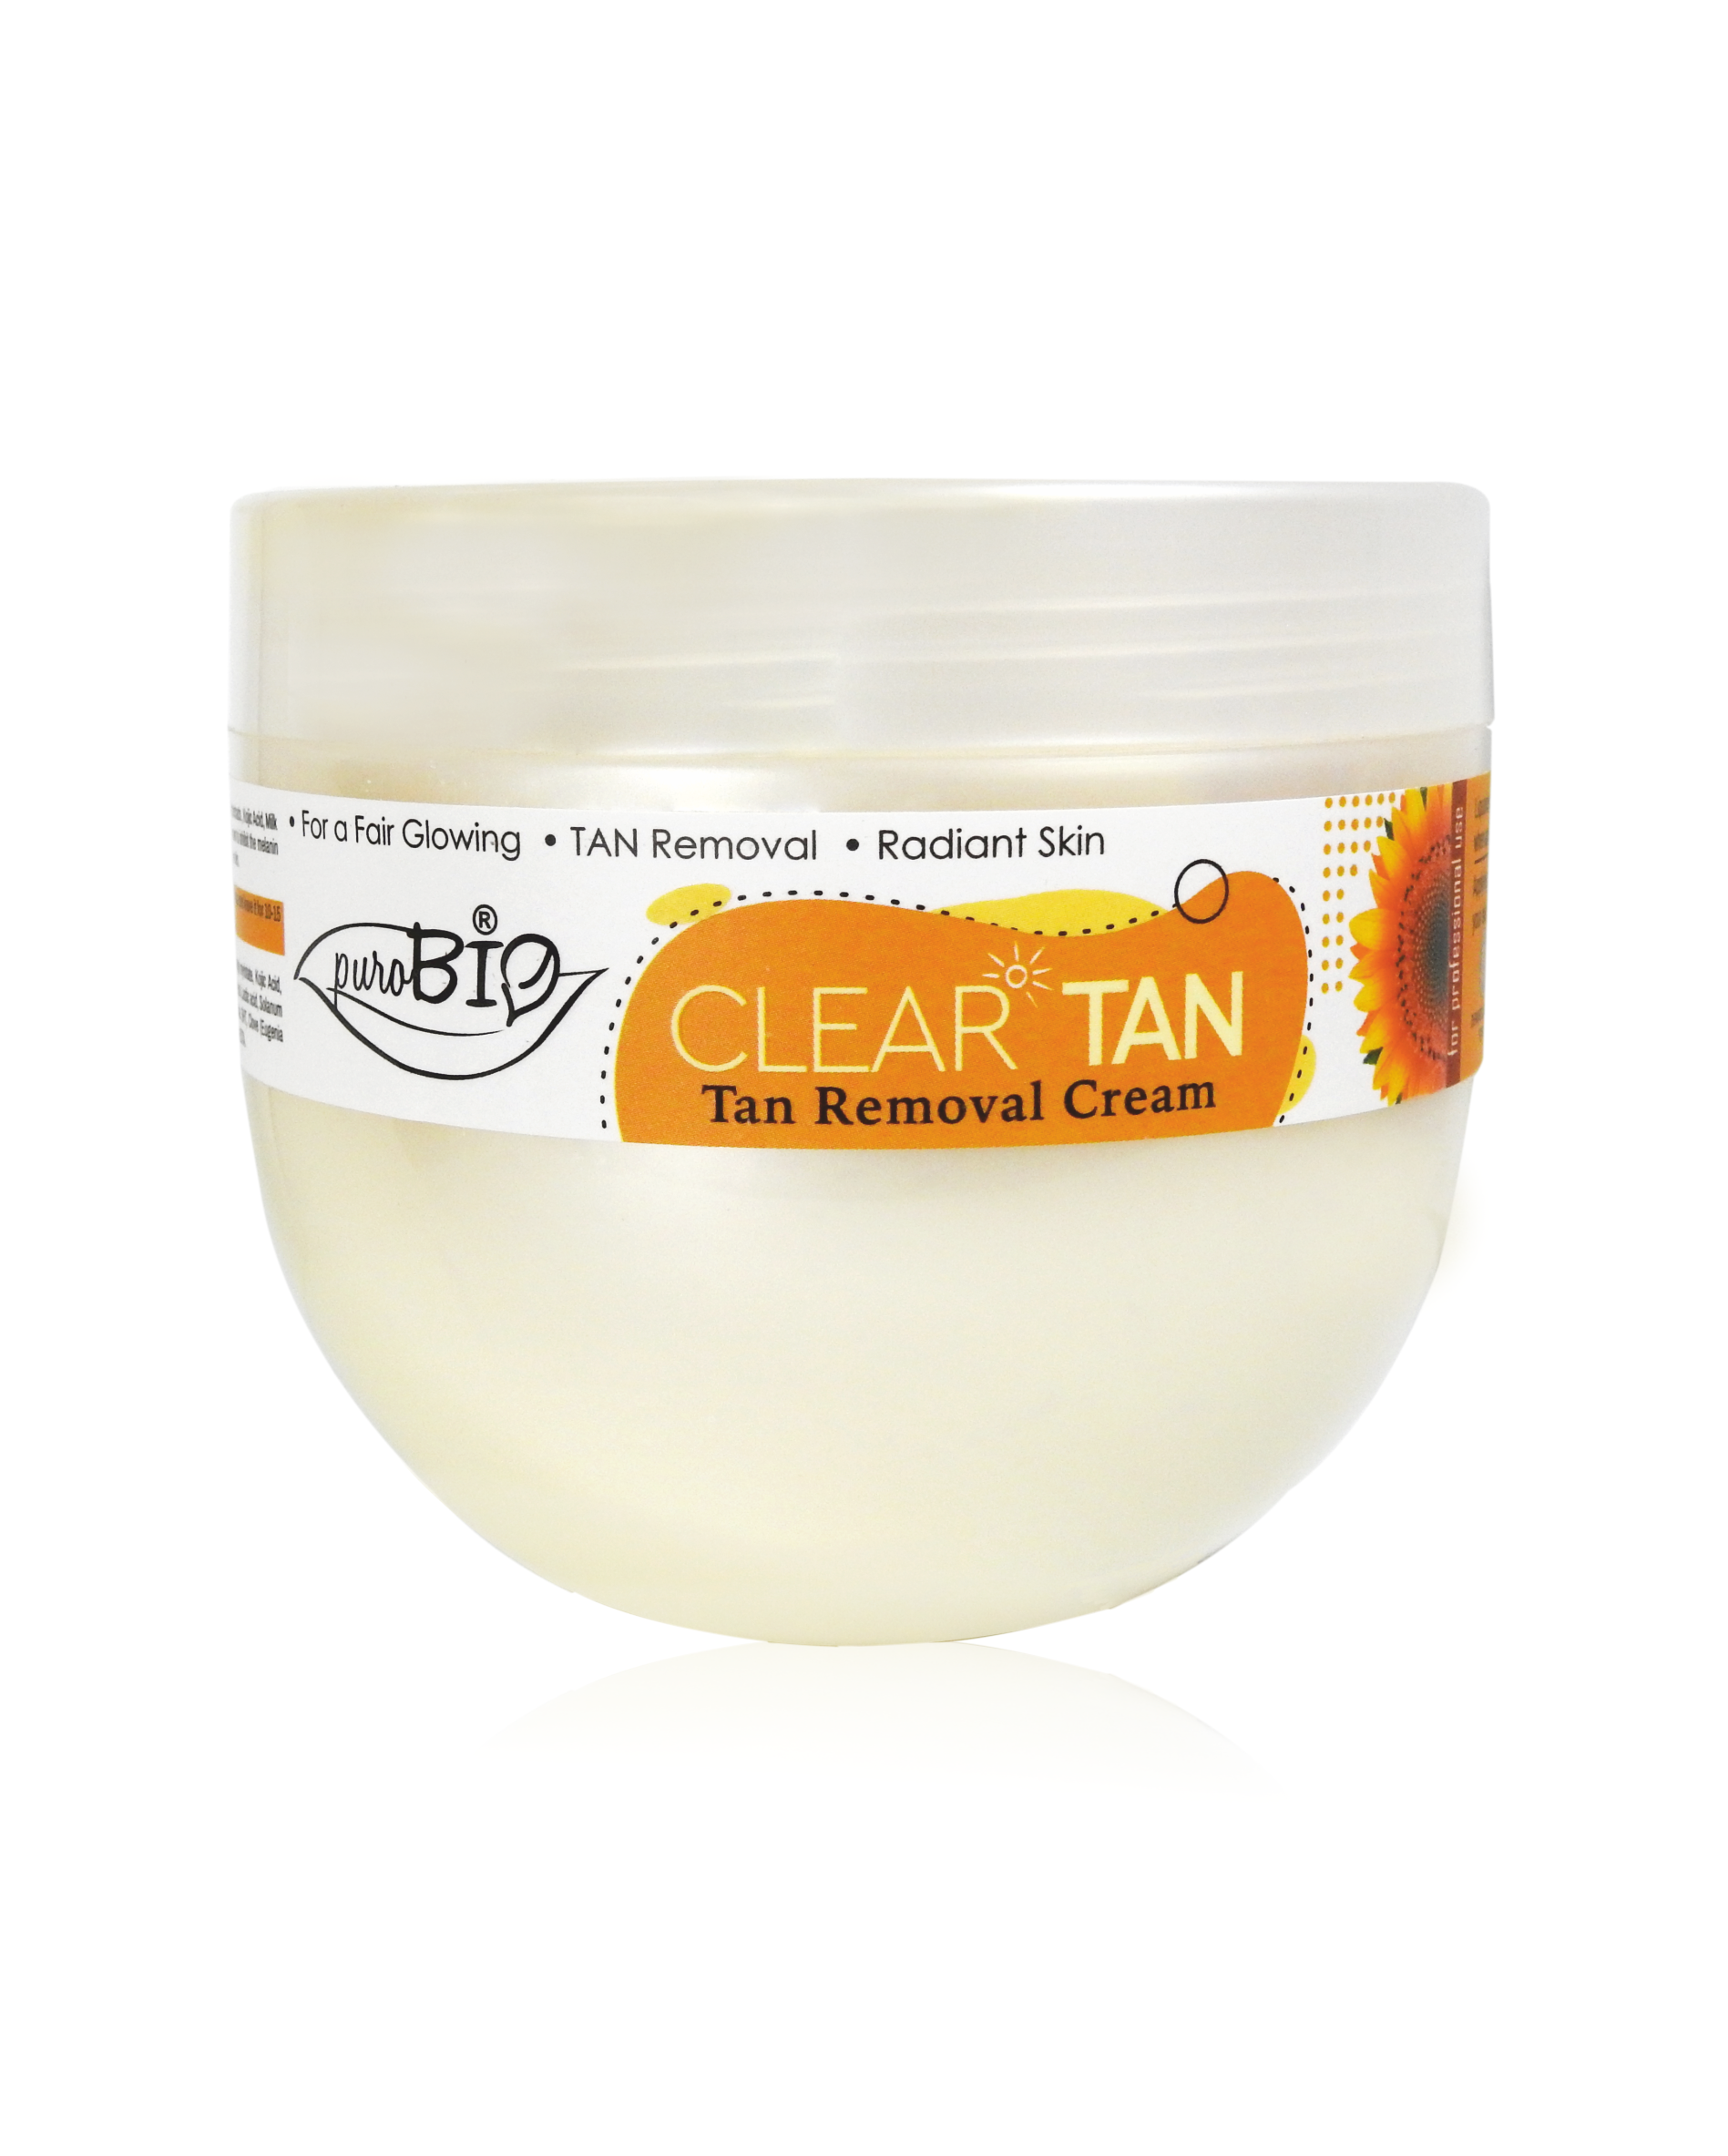 Tan removal cream